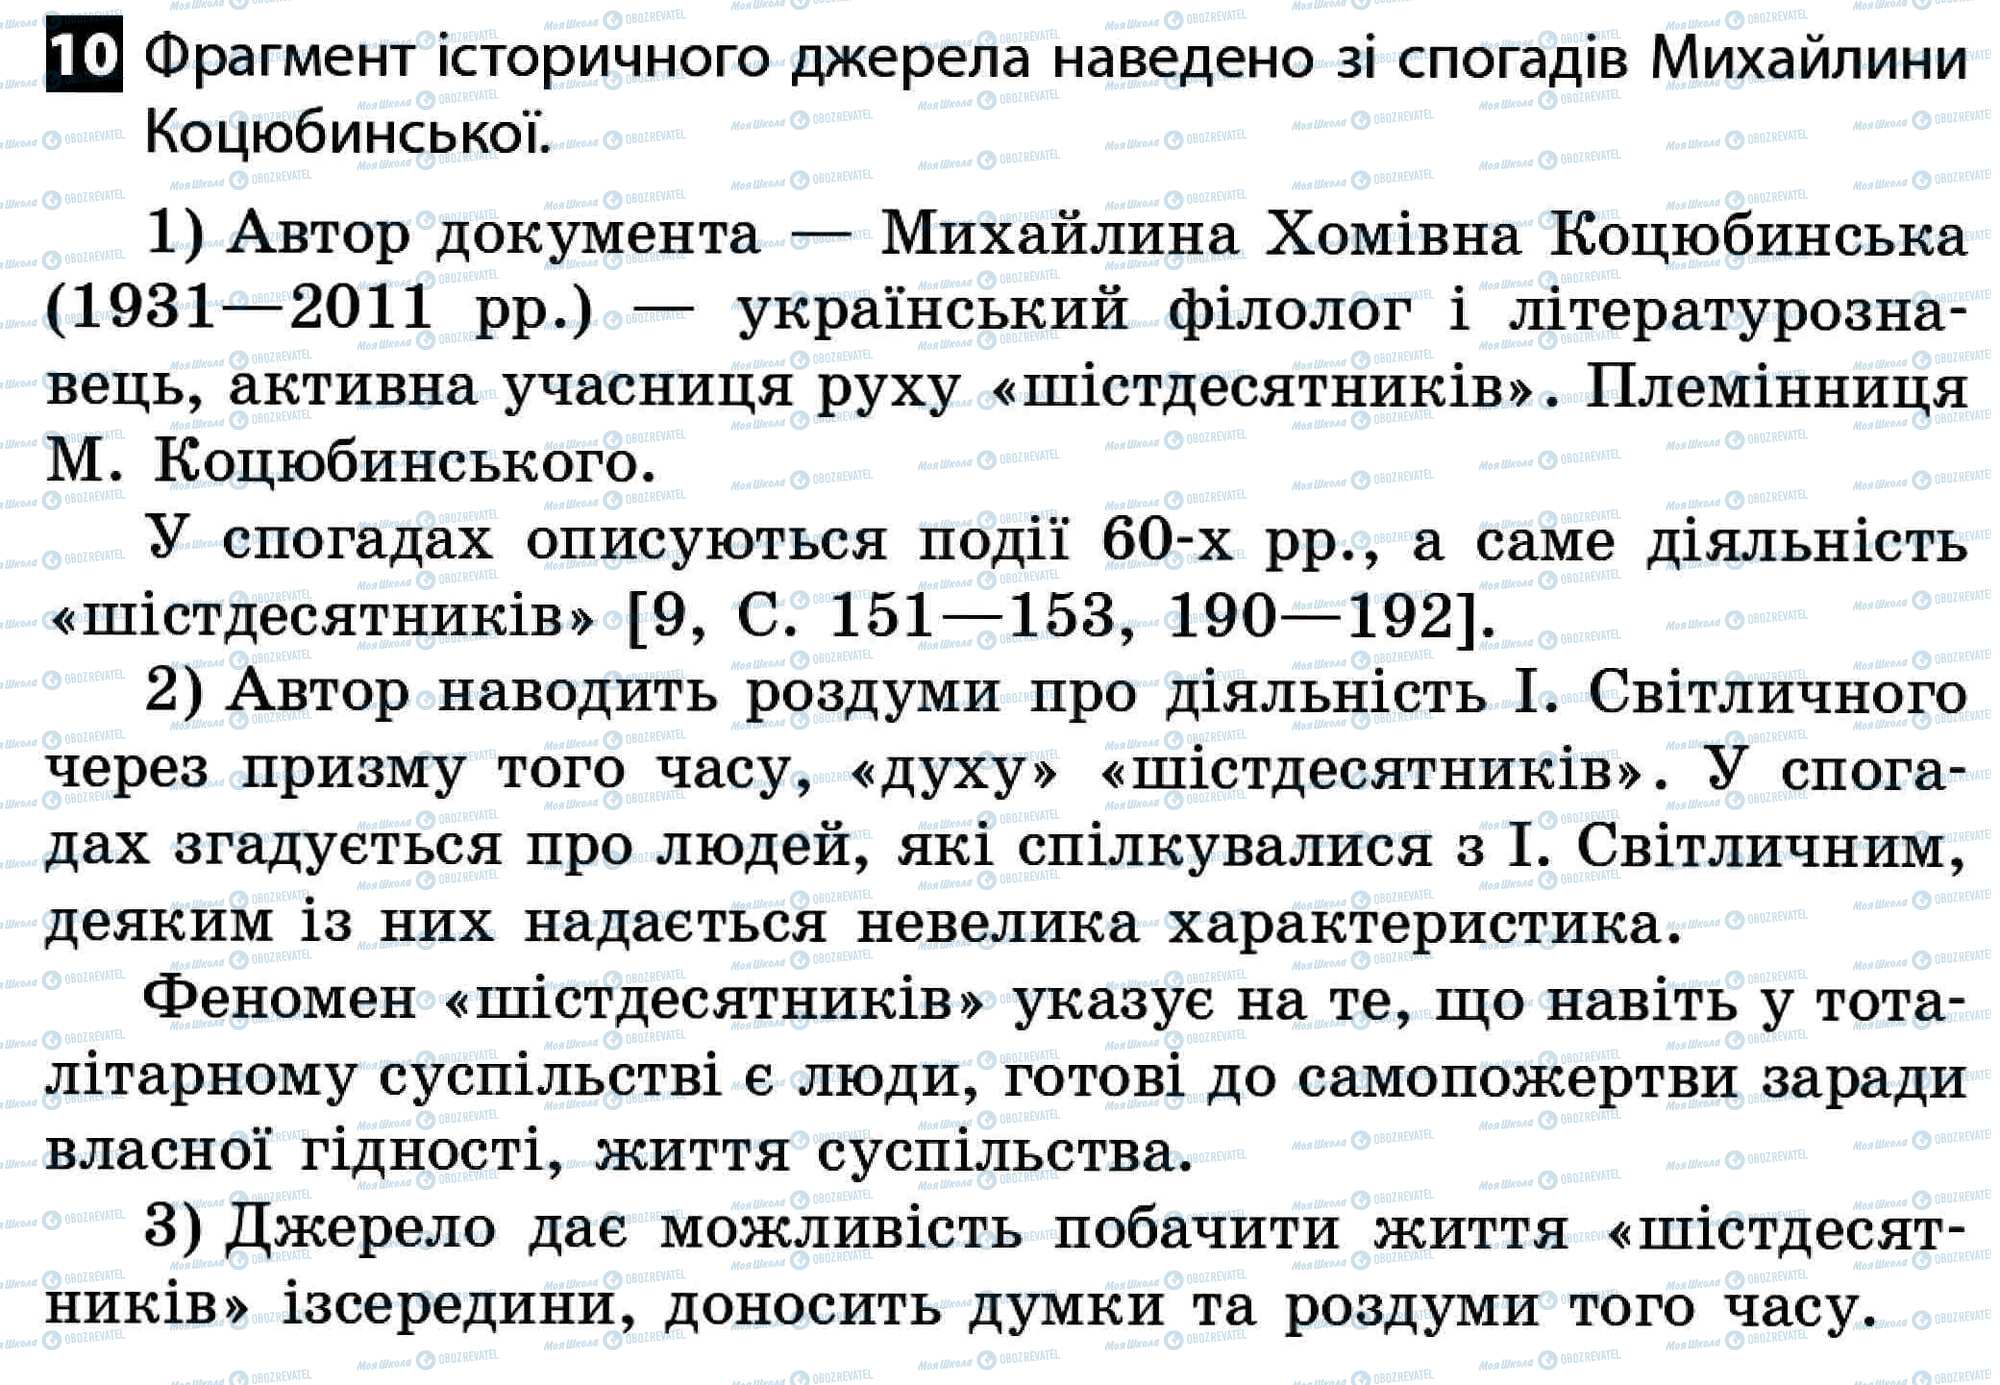 ДПА История Украины 11 класс страница 10